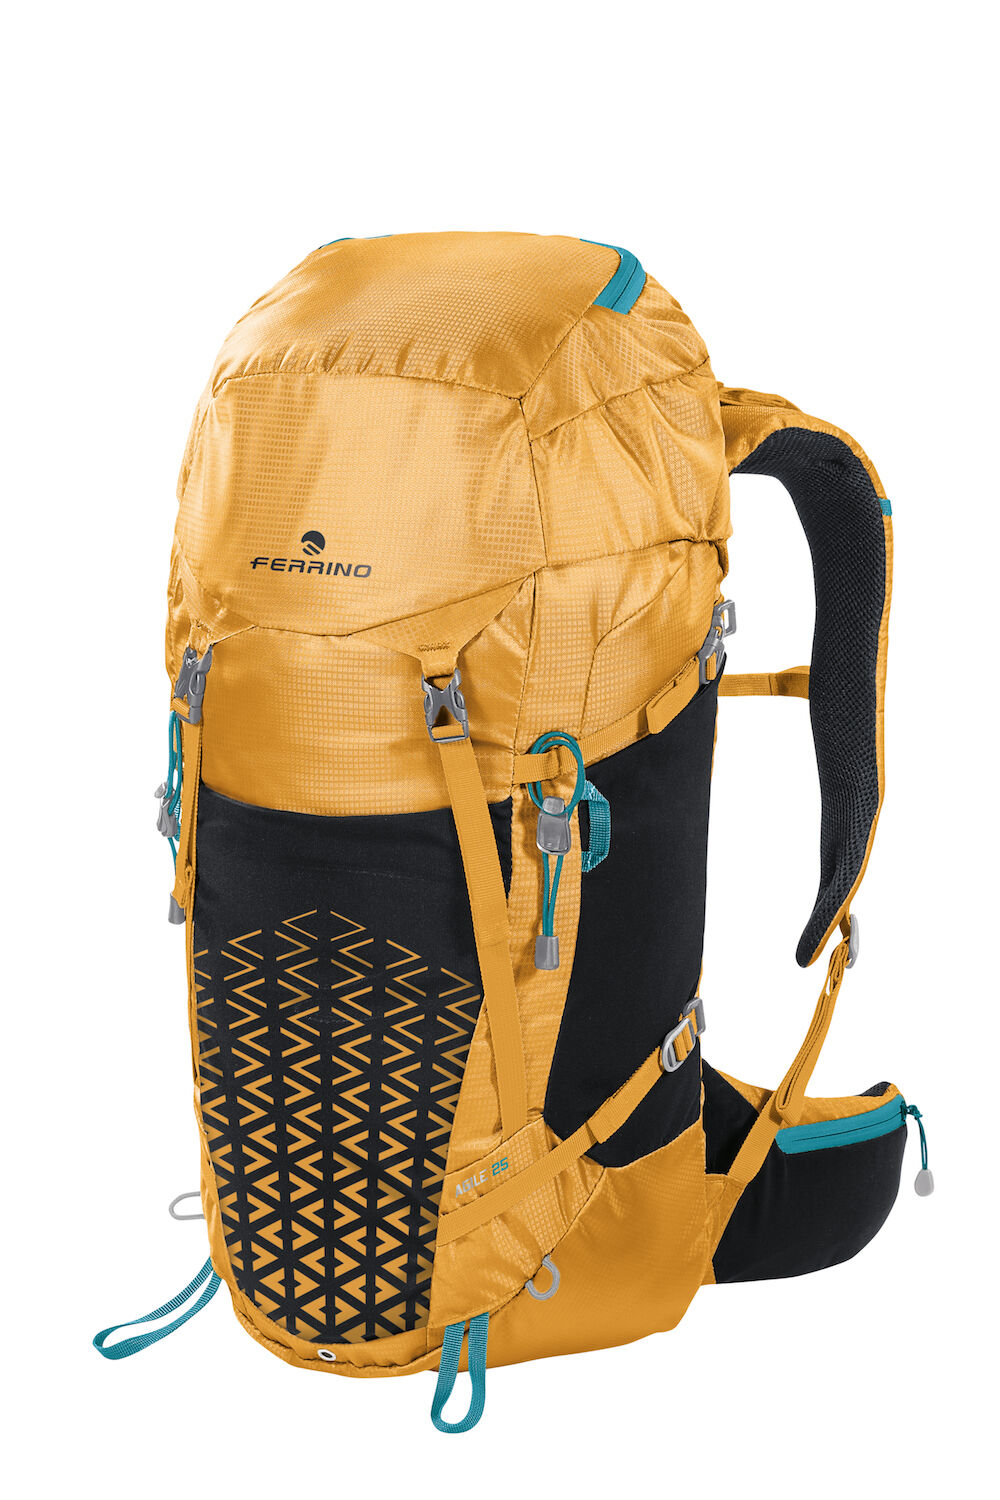 Ferrino Agile 25 - Hiking backpack